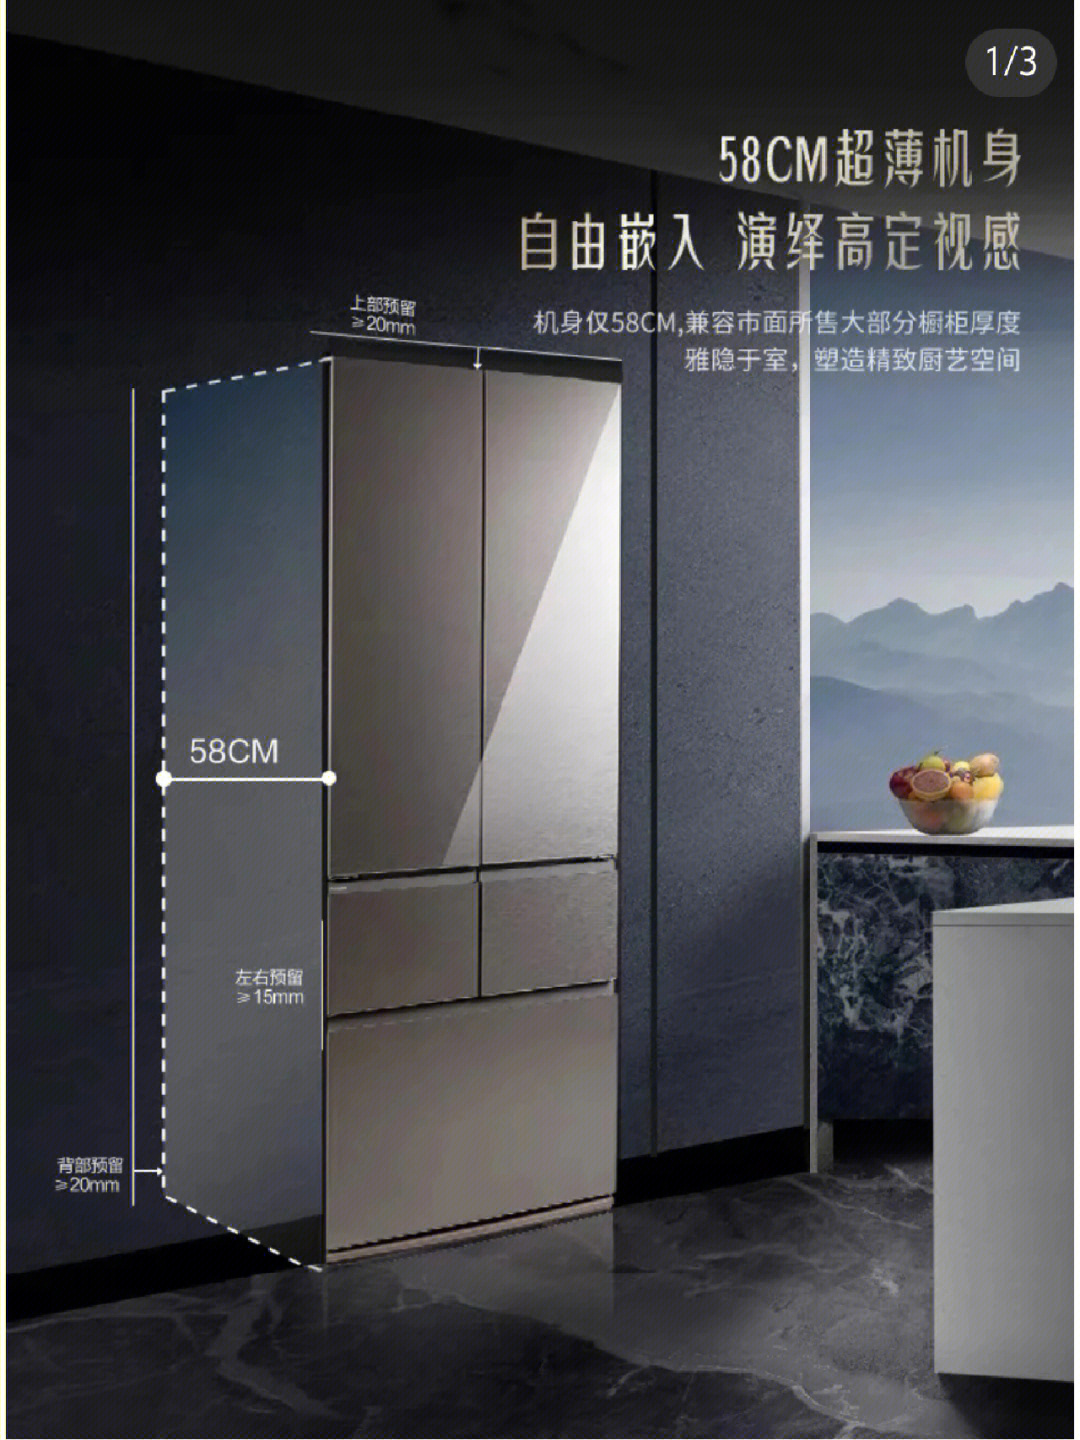 厨房冰箱位置预留的尺寸左边半高柜深度580,右边墙深度605,宽度855